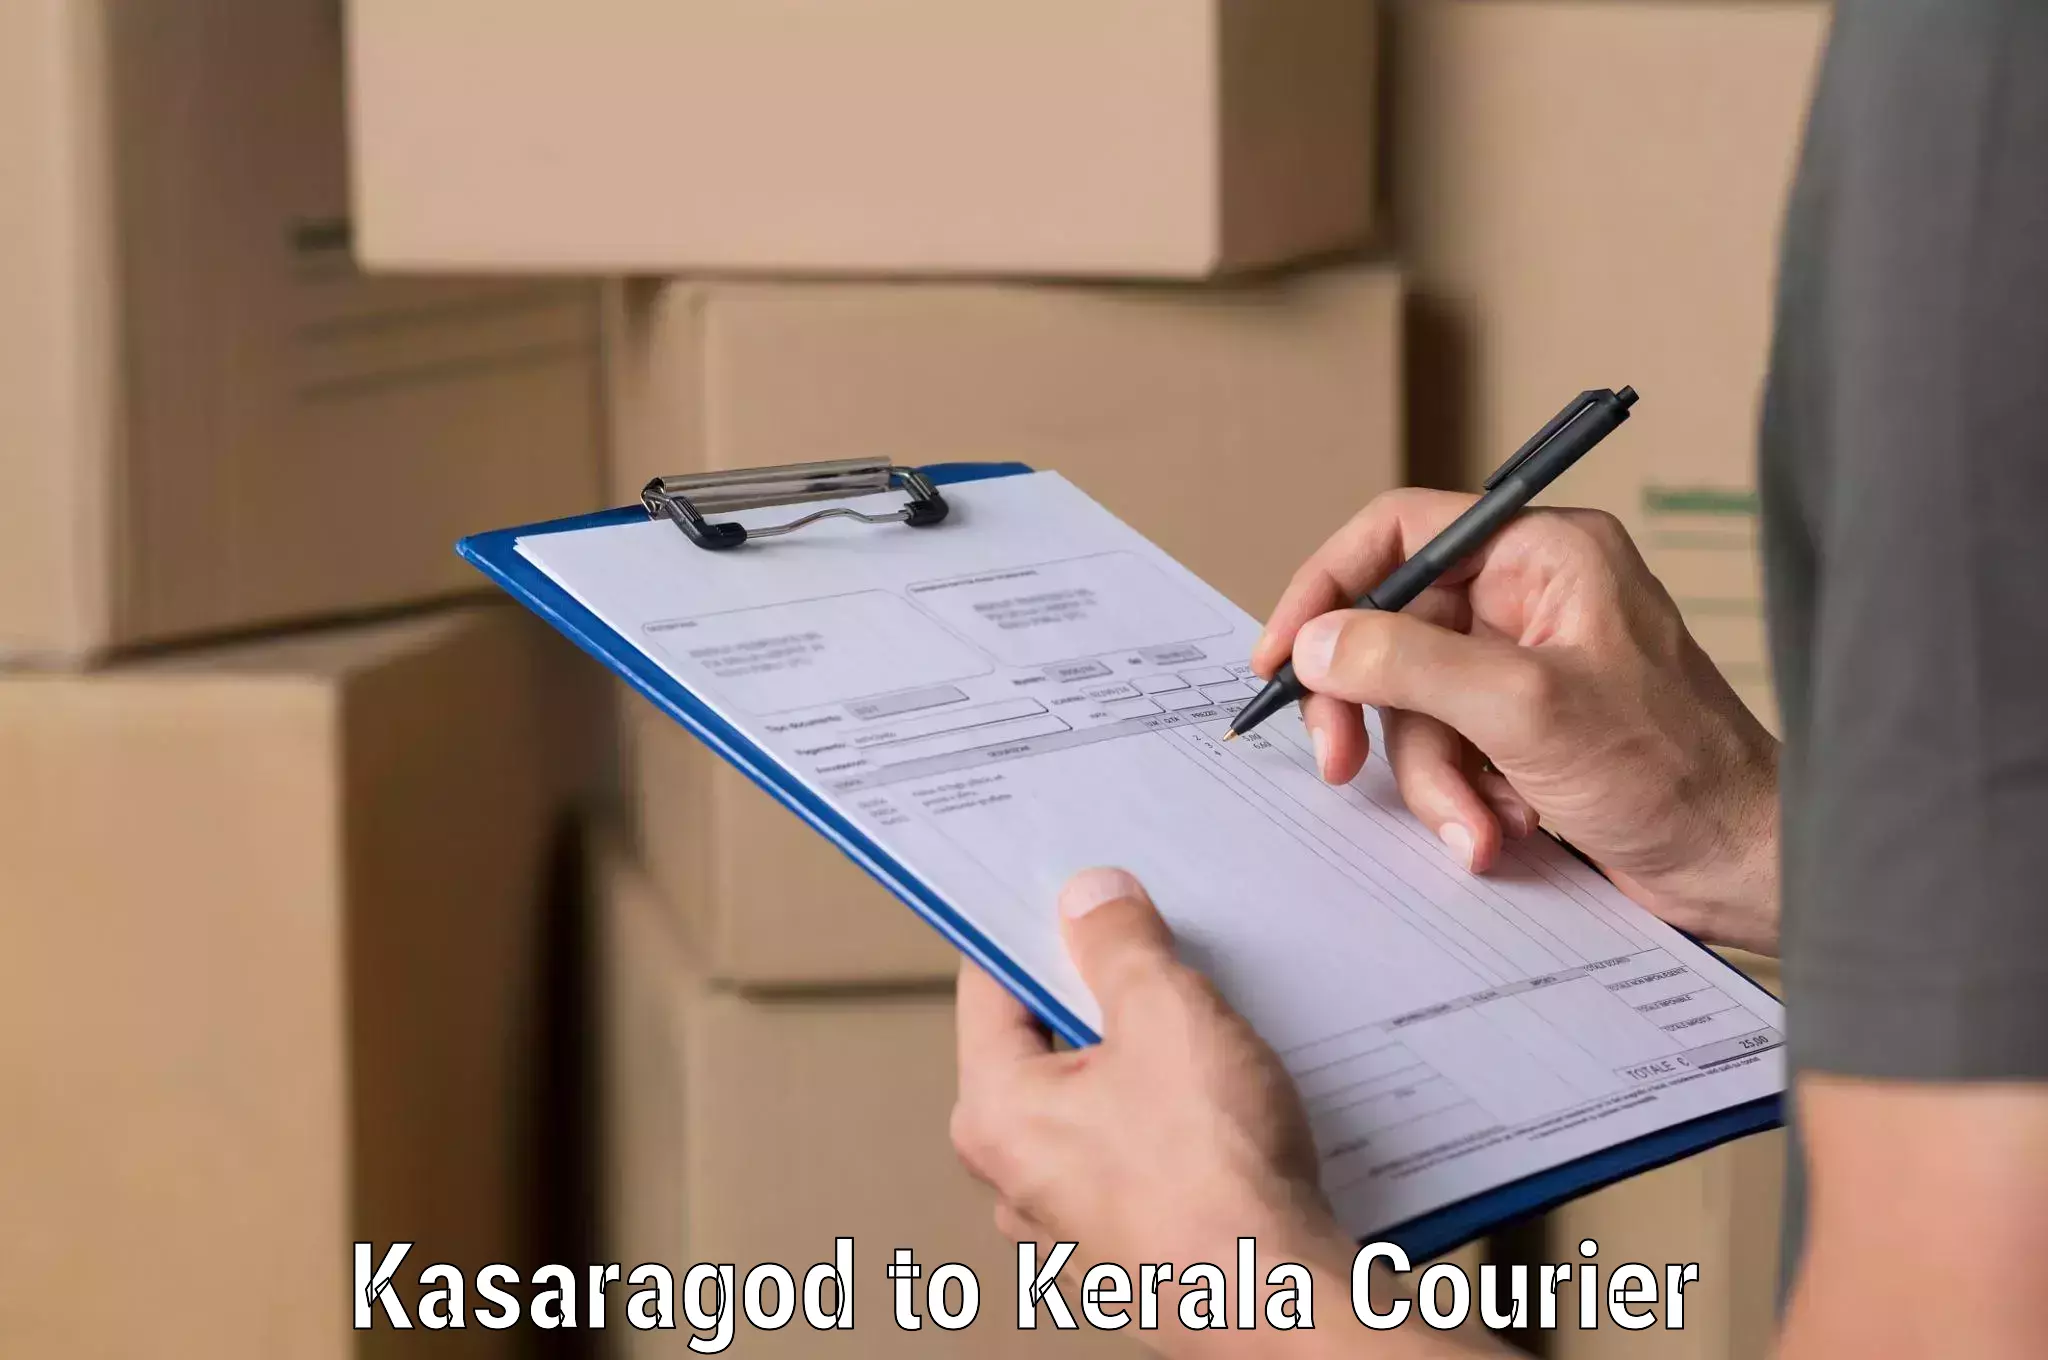 Affordable parcel service Kasaragod to Kadanad